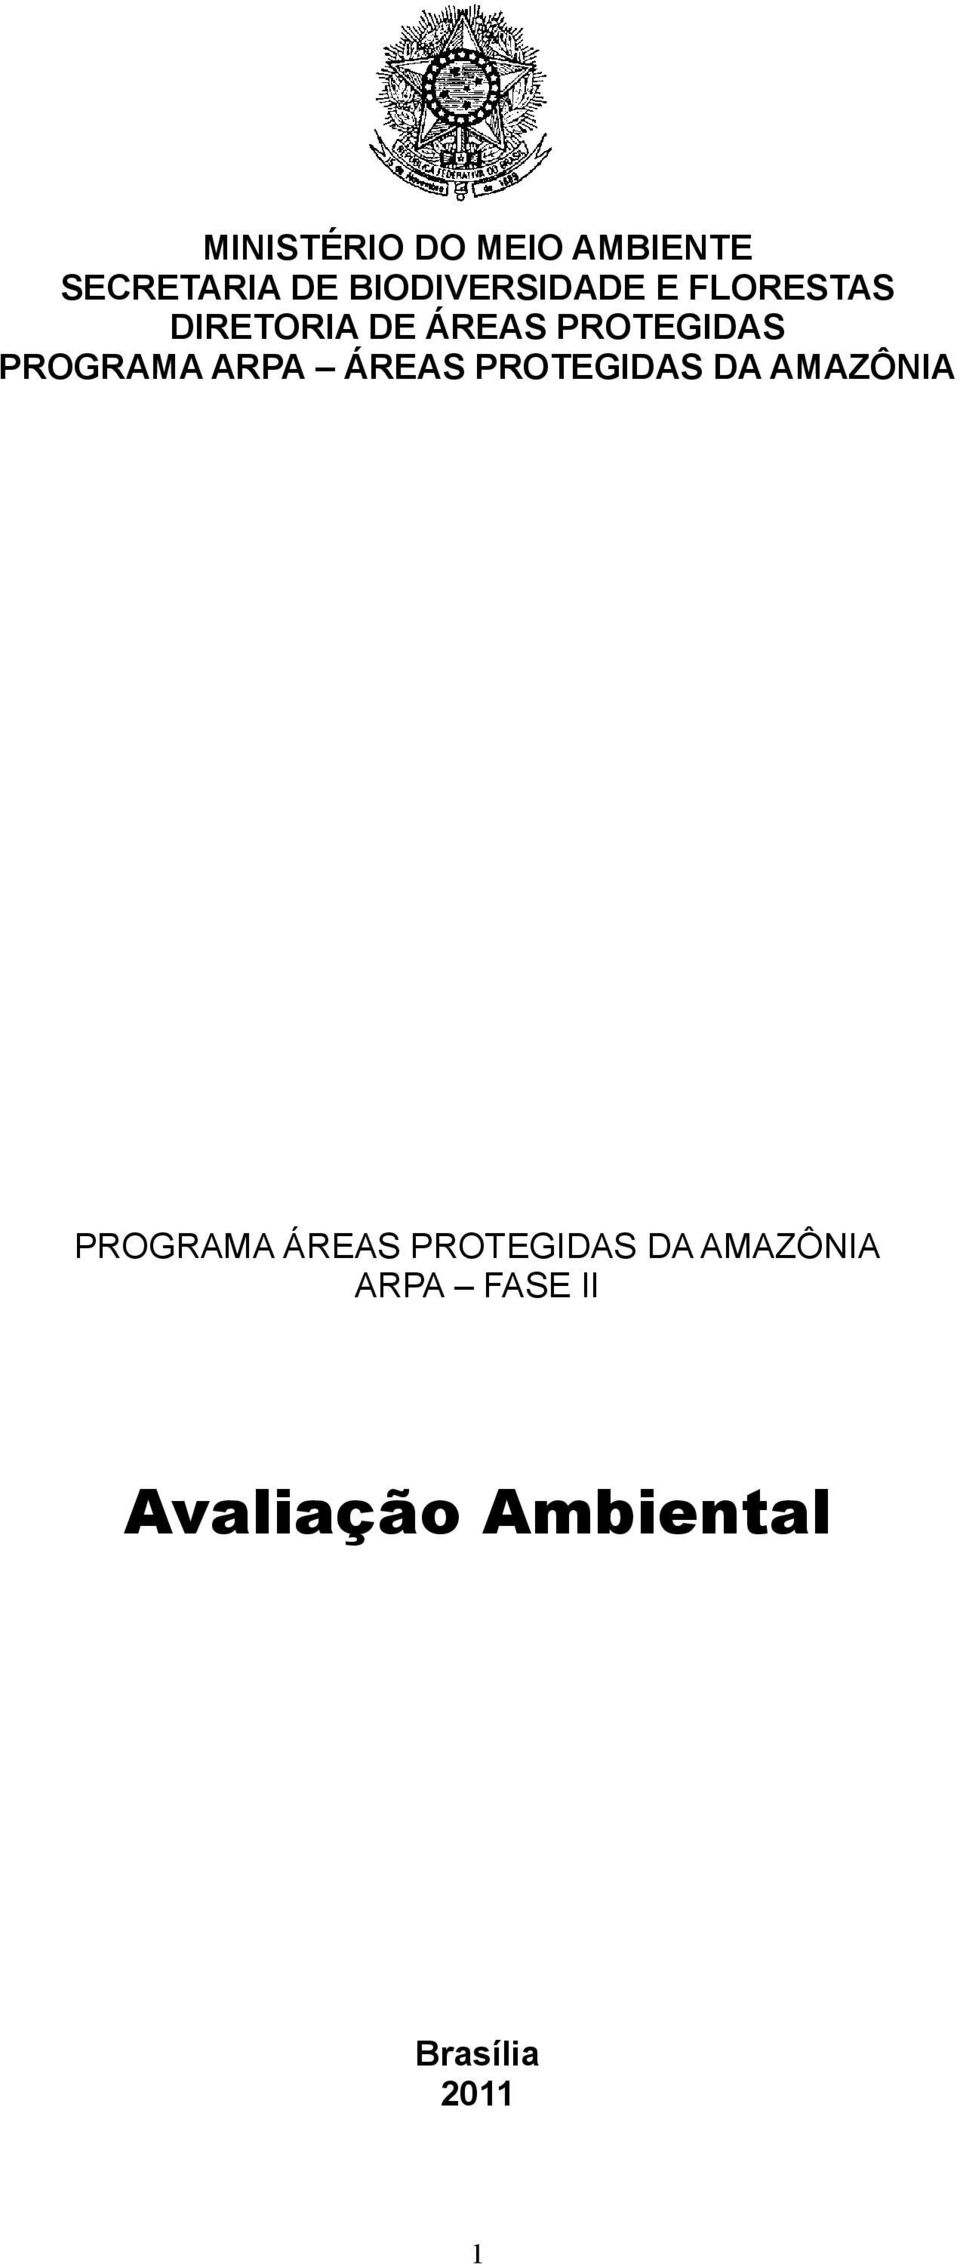 ÁREAS PROTEGIDAS DA AMAZÔNIA PROGRAMA ÁREAS PROTEGIDAS